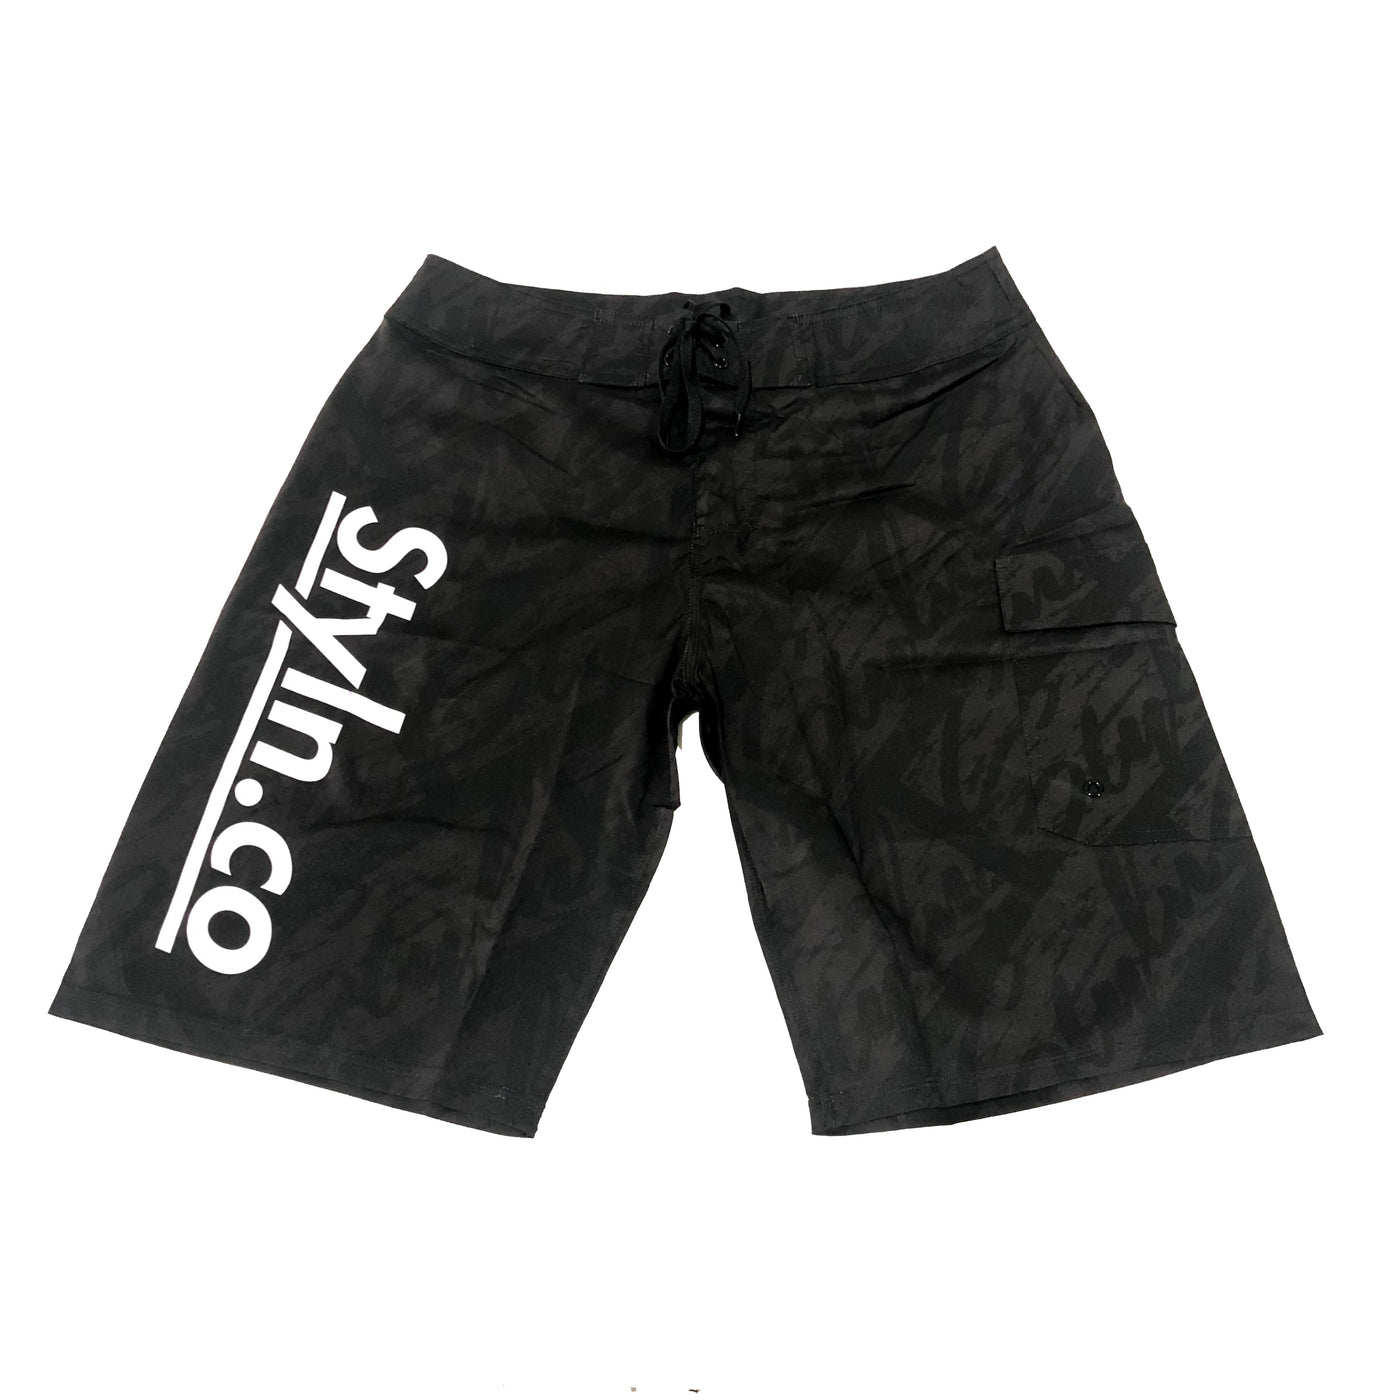 STYLN® Boardshorts Black